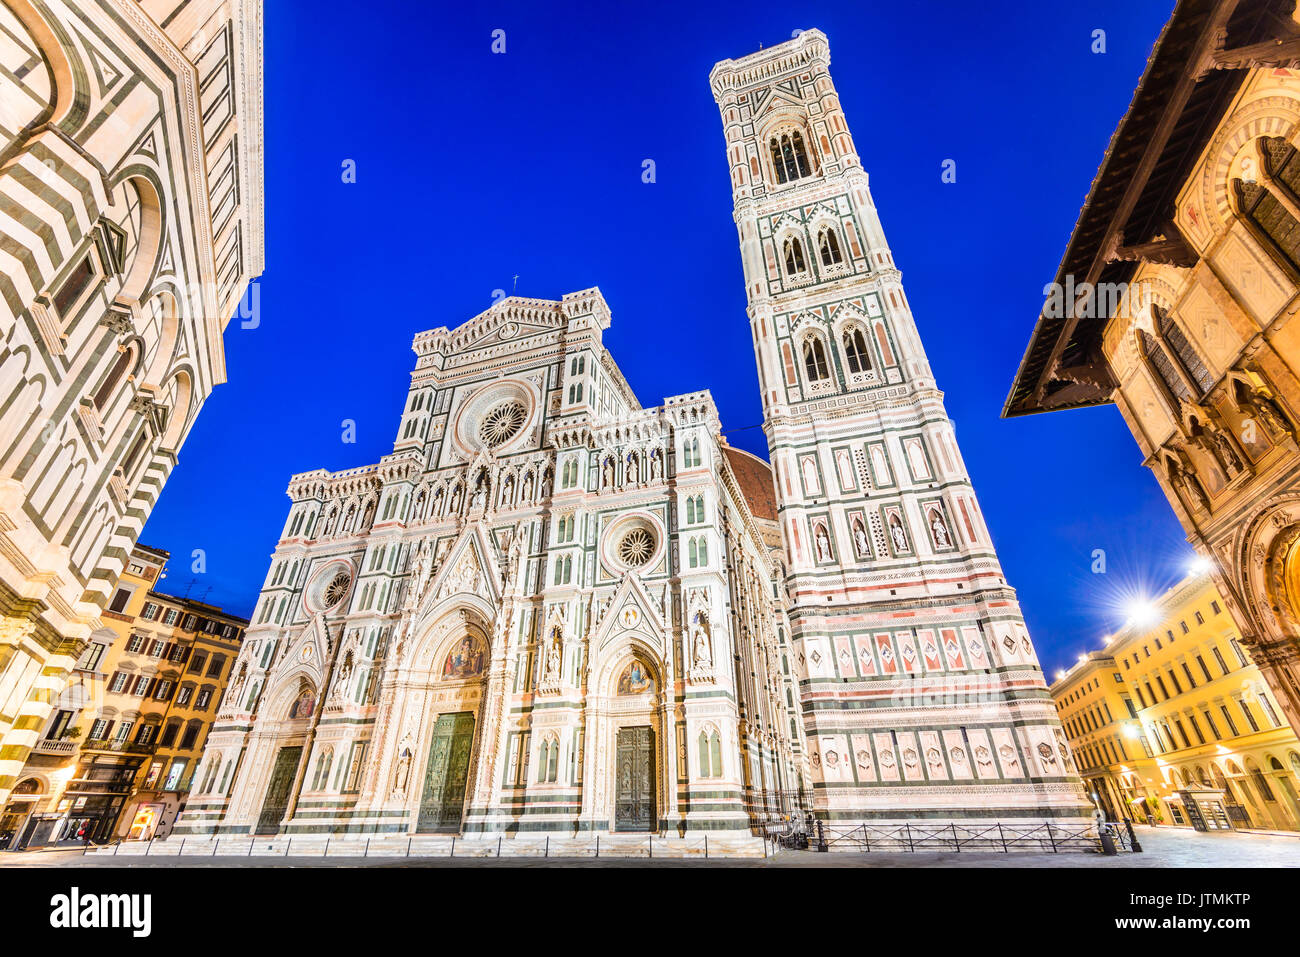 Florencia, la toscana - Paisaje nocturno con la piazza del Duomo y la Catedrale de Santa María del Fiori, arquitectura renacentista en Italia. Foto de stock